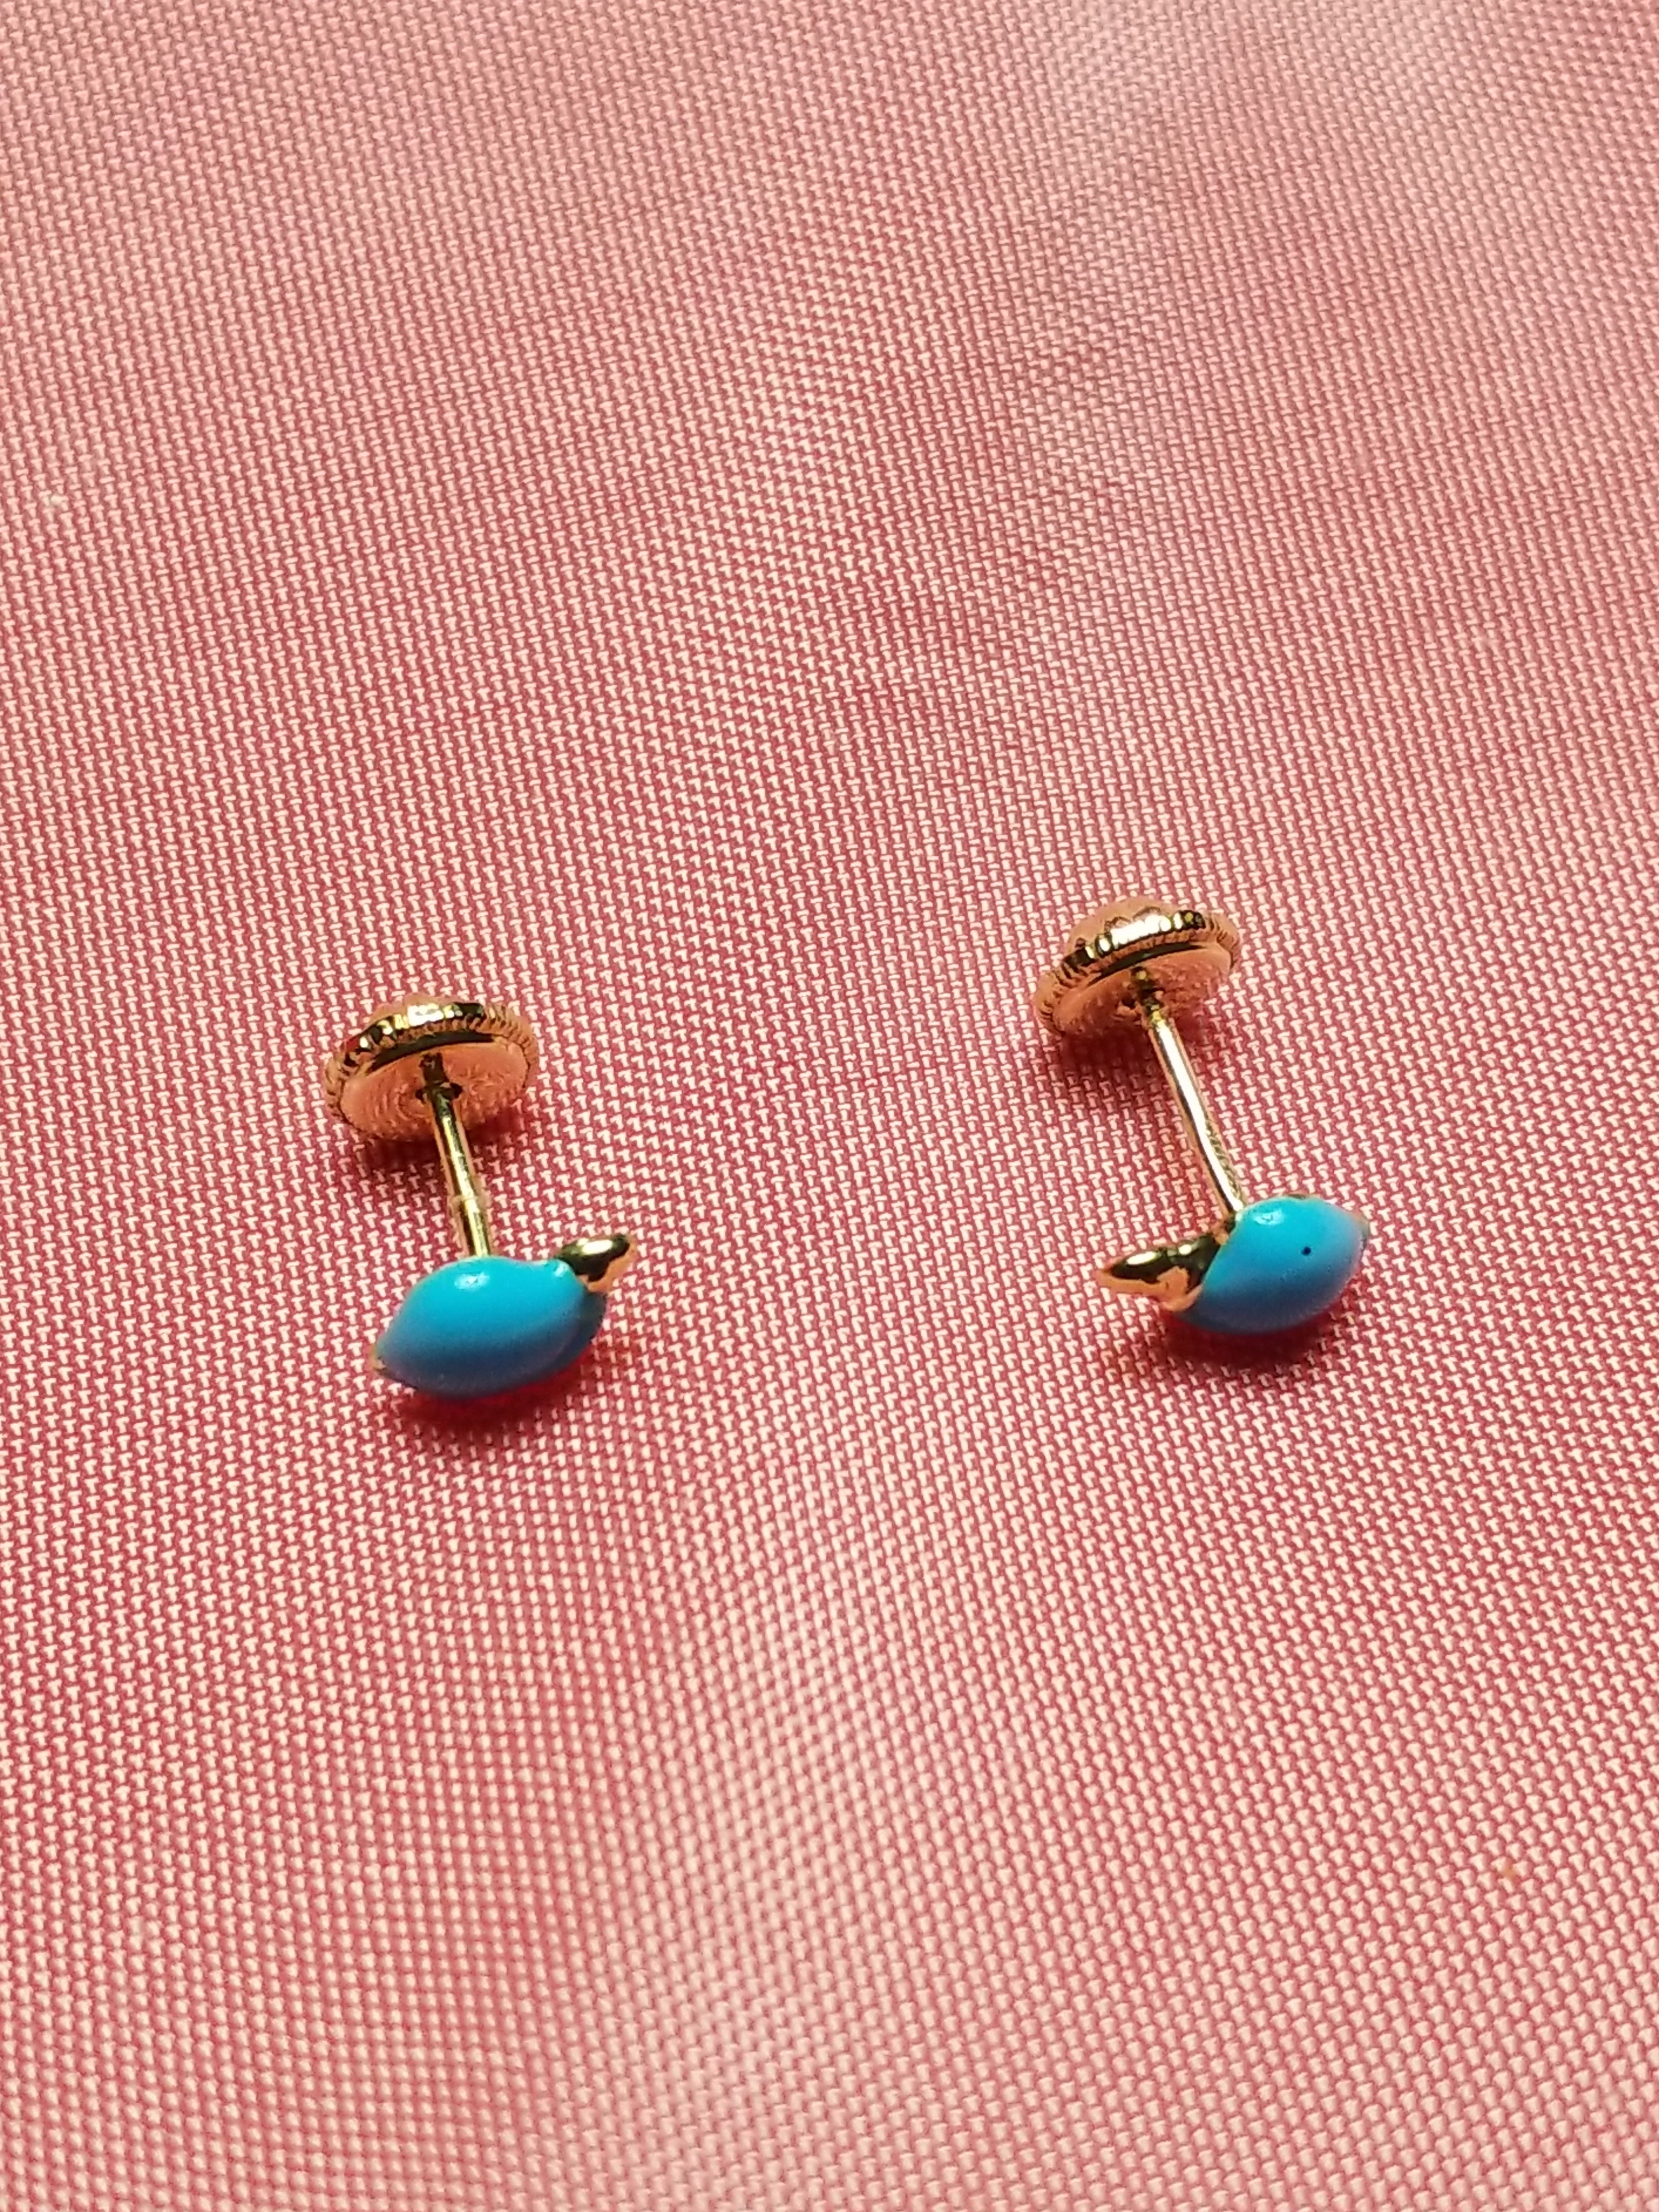 Children's 10kt Earrings - Blue Turtles - Screw Backs